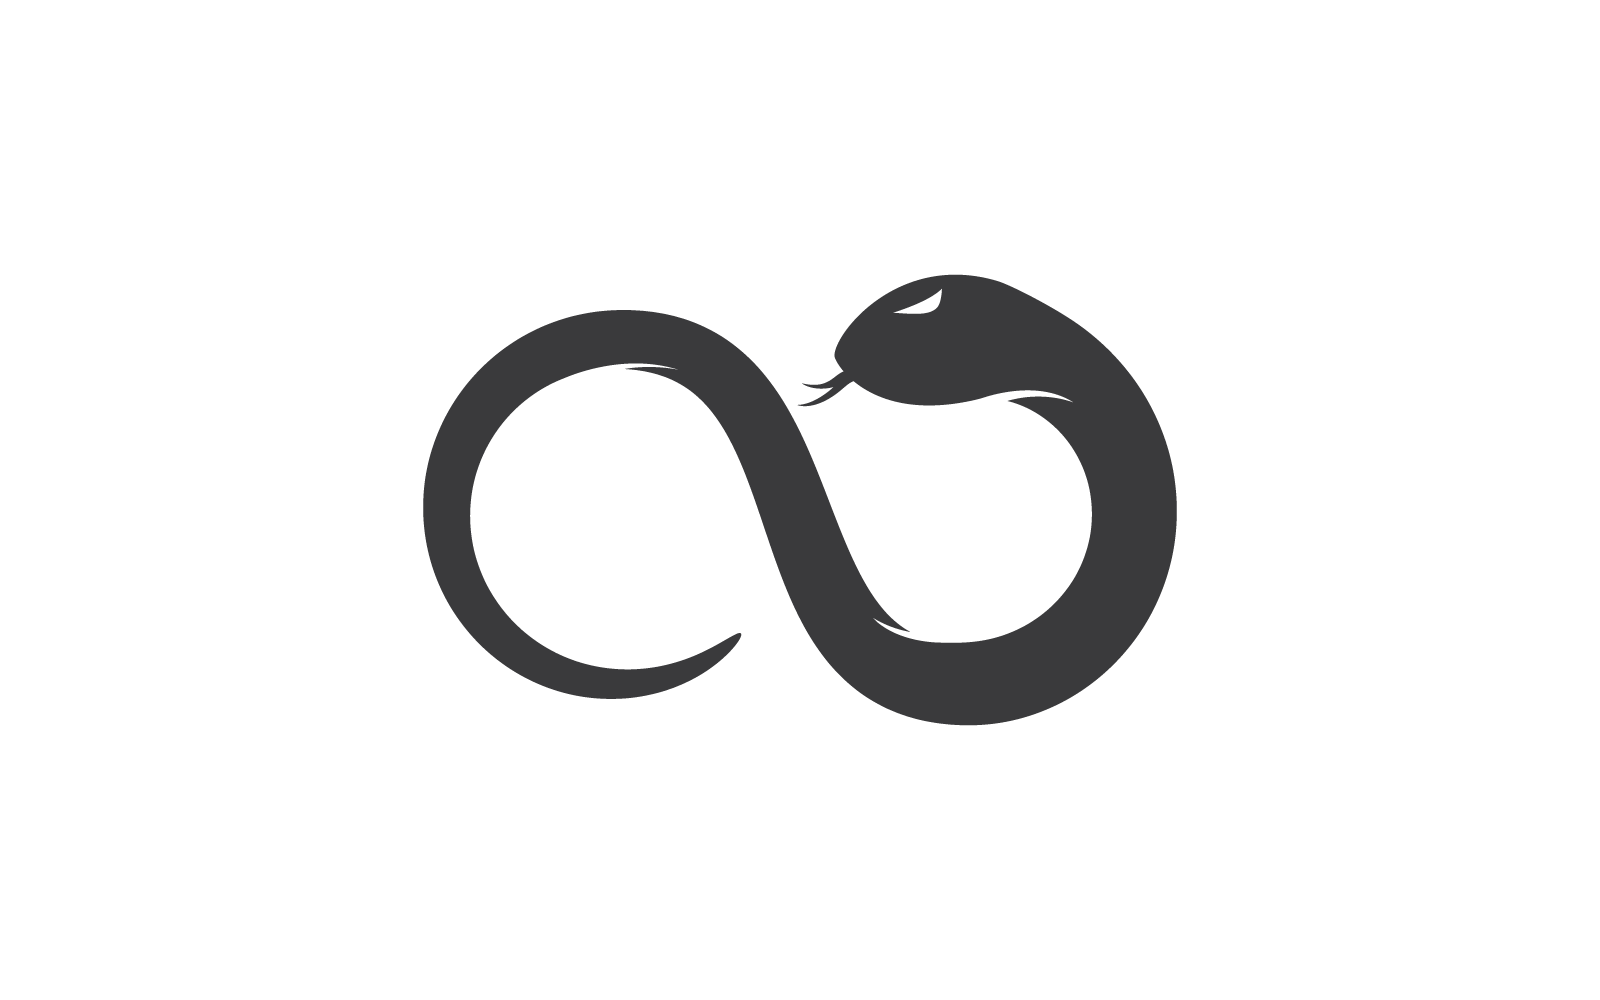 Snake logo vector illustration flat design - TemplateMonster